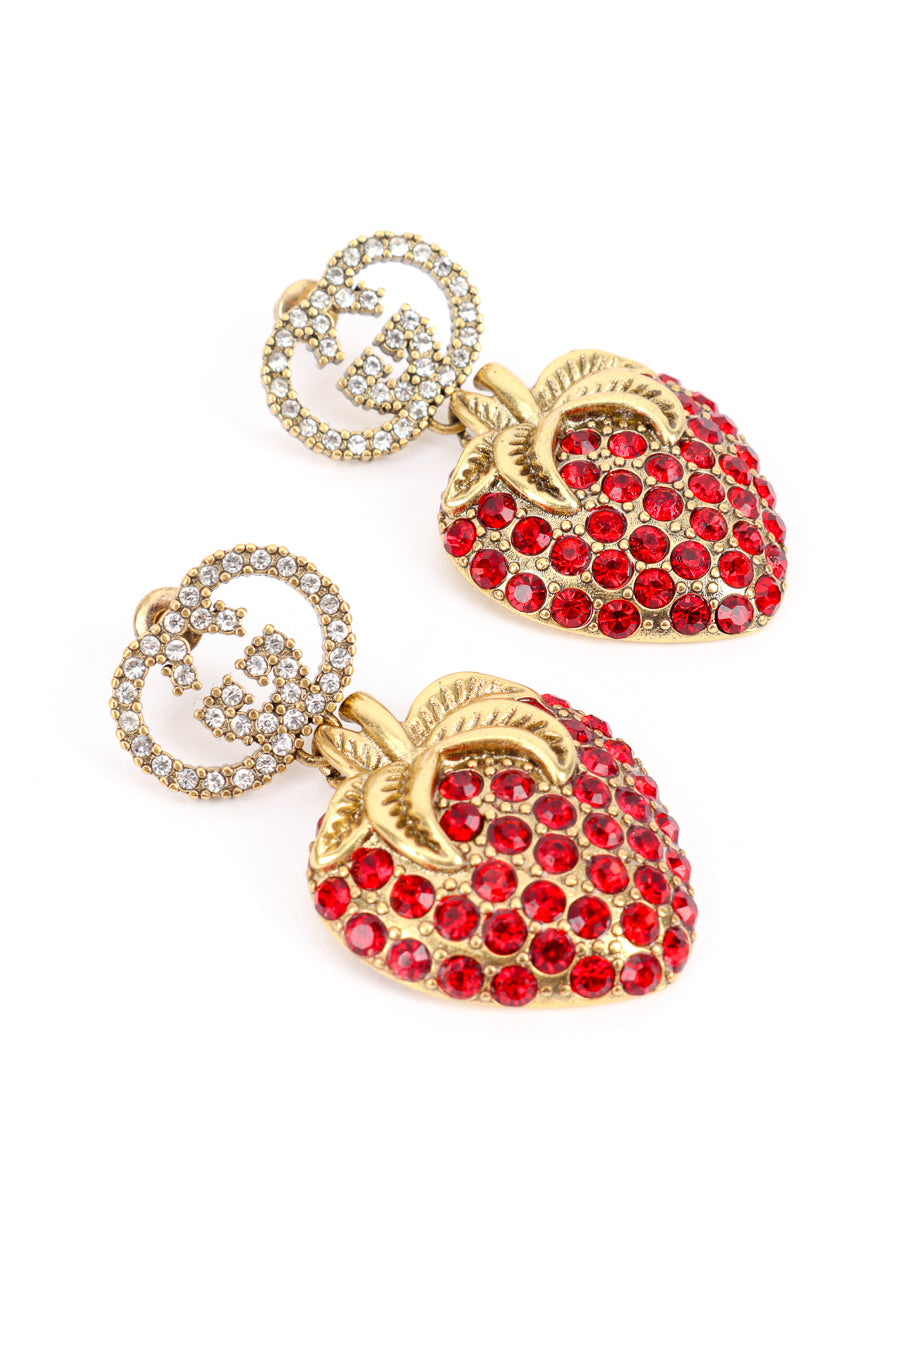 Gucci Crystal Strawberry Drop Earrings front closeup @recess la